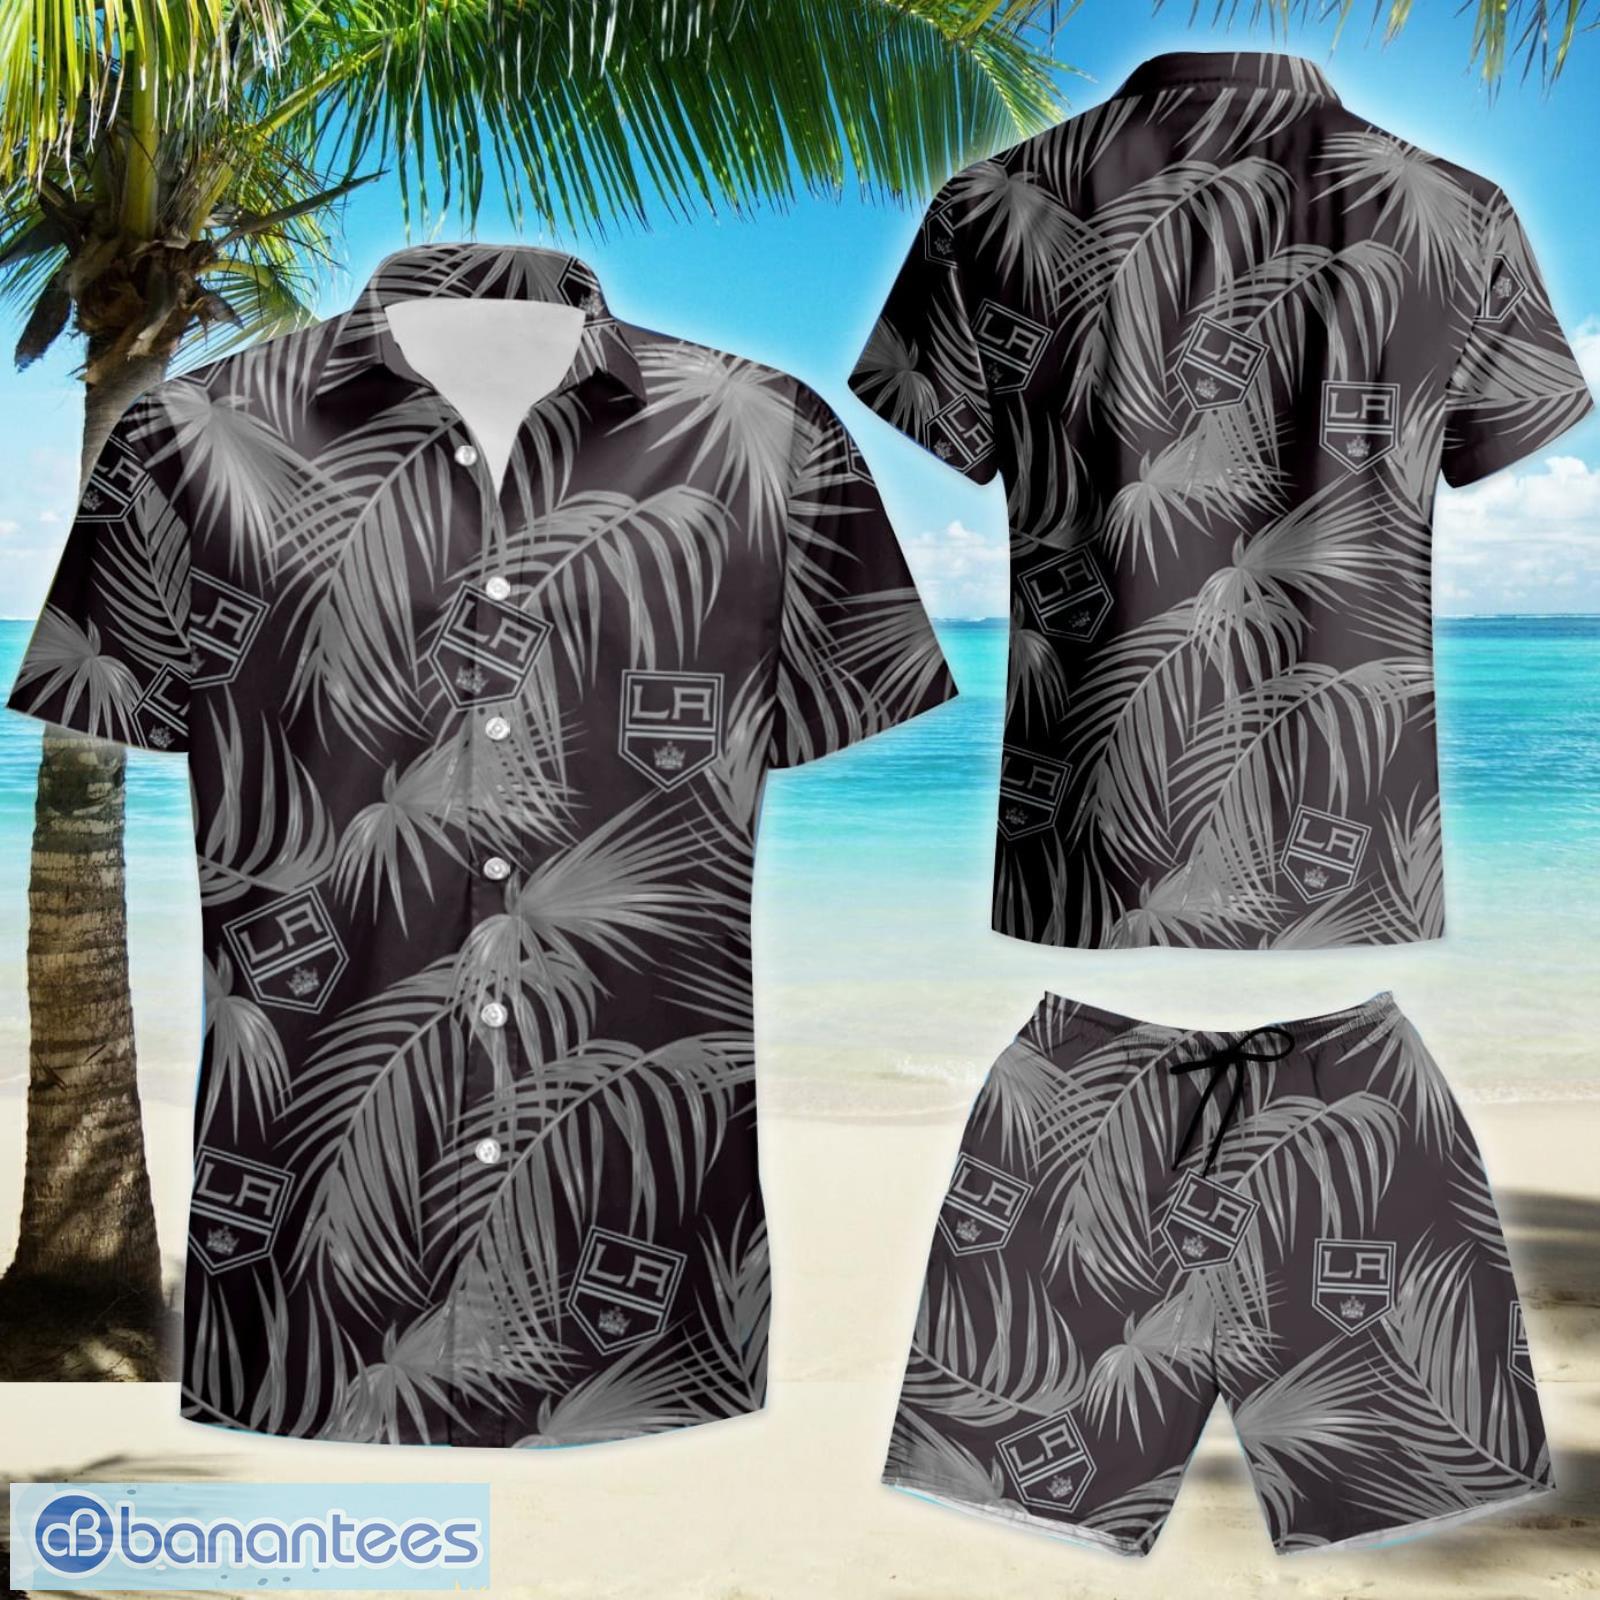 Pittsburgh Penguins Hockey Team 3d Print Summer Hawaiian Shirt And Shorts -  Banantees